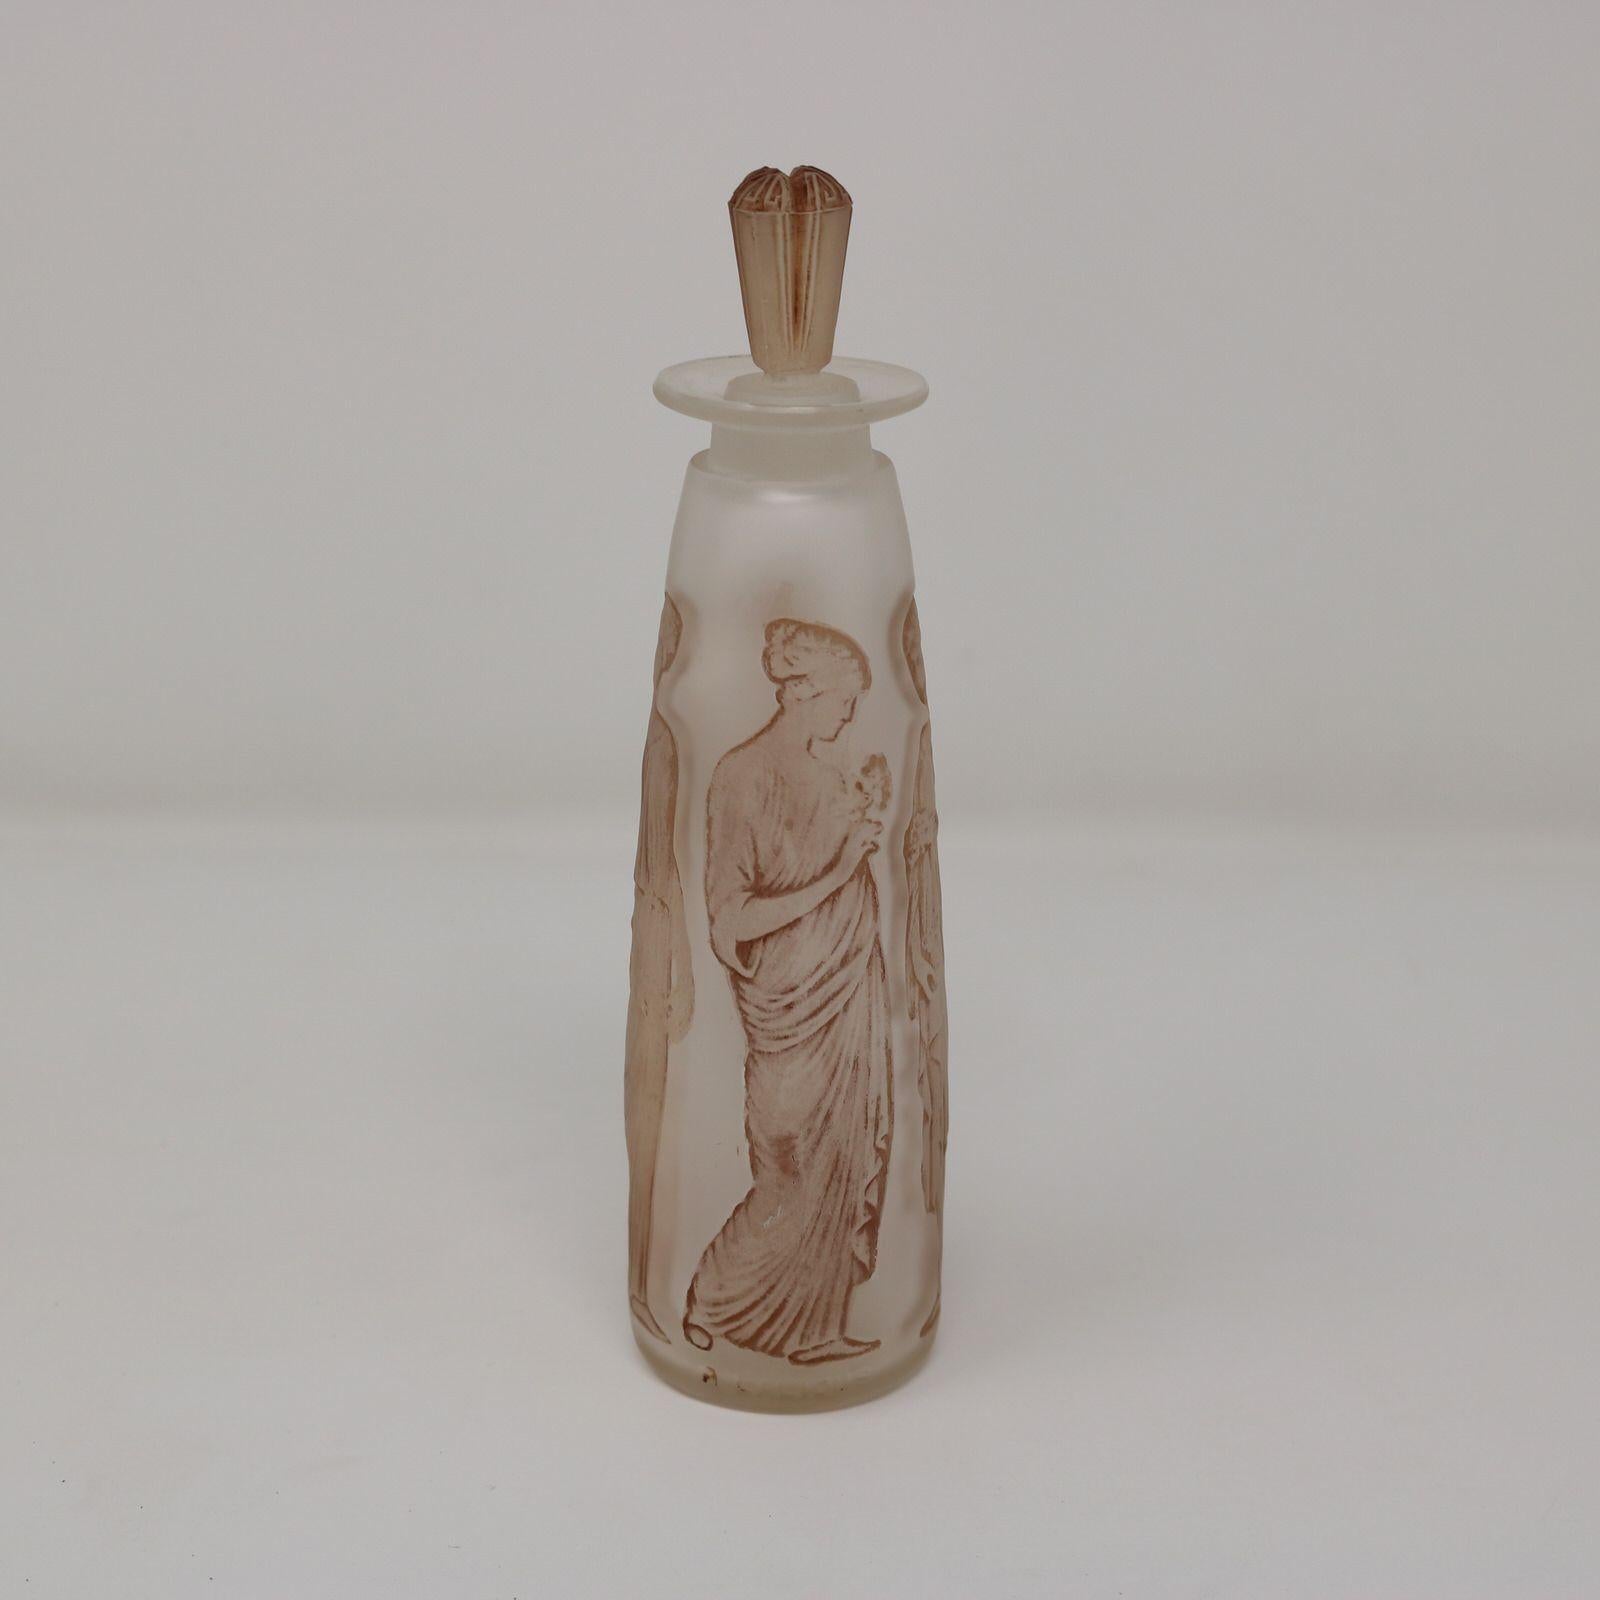 Rene Lalique klar & matt, Sepia gefärbt Glas Parfümflasche, komplett mit Original-Box. Design 'Ambre Antique'. Dieses Design zeigt gewandete Jungfrauen, die Blumensträuße halten. Eingegossene Herstellermarke 